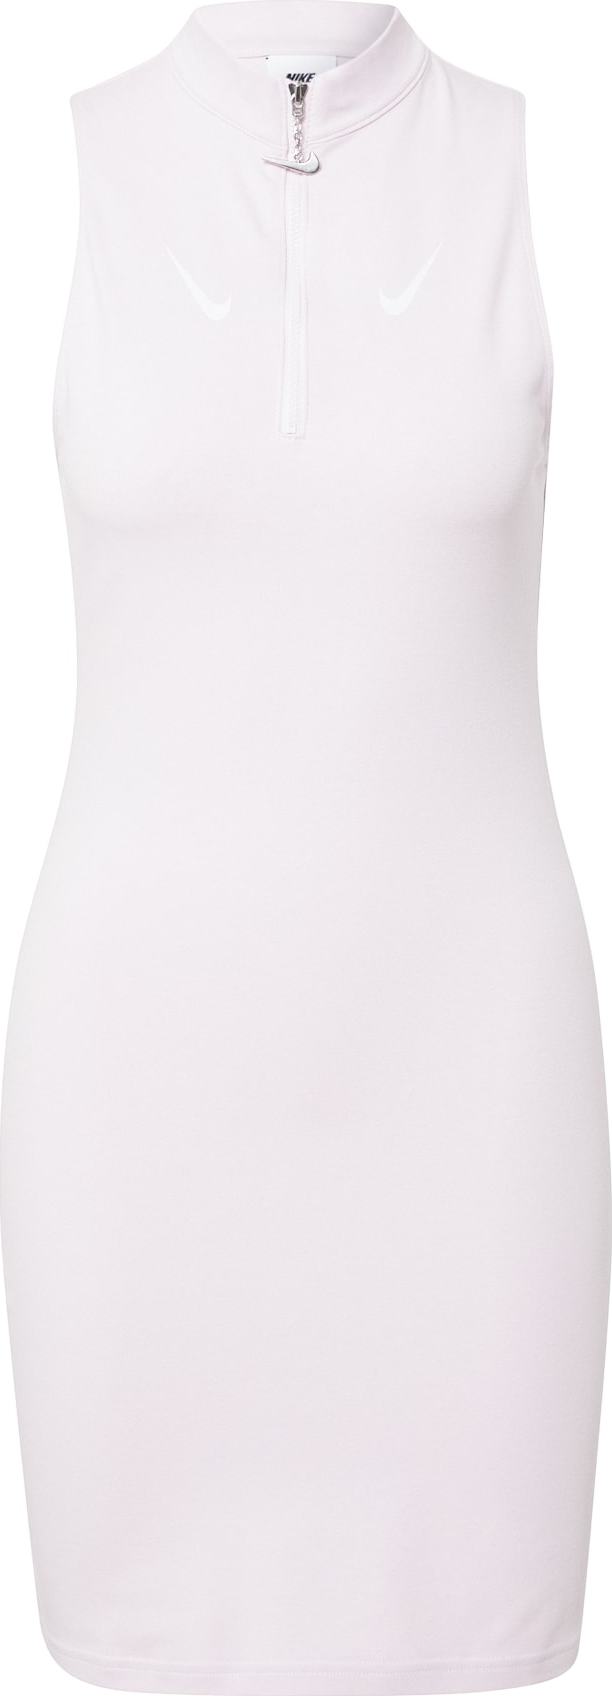 Nike Sportswear Šaty pastelově růžová / bílá